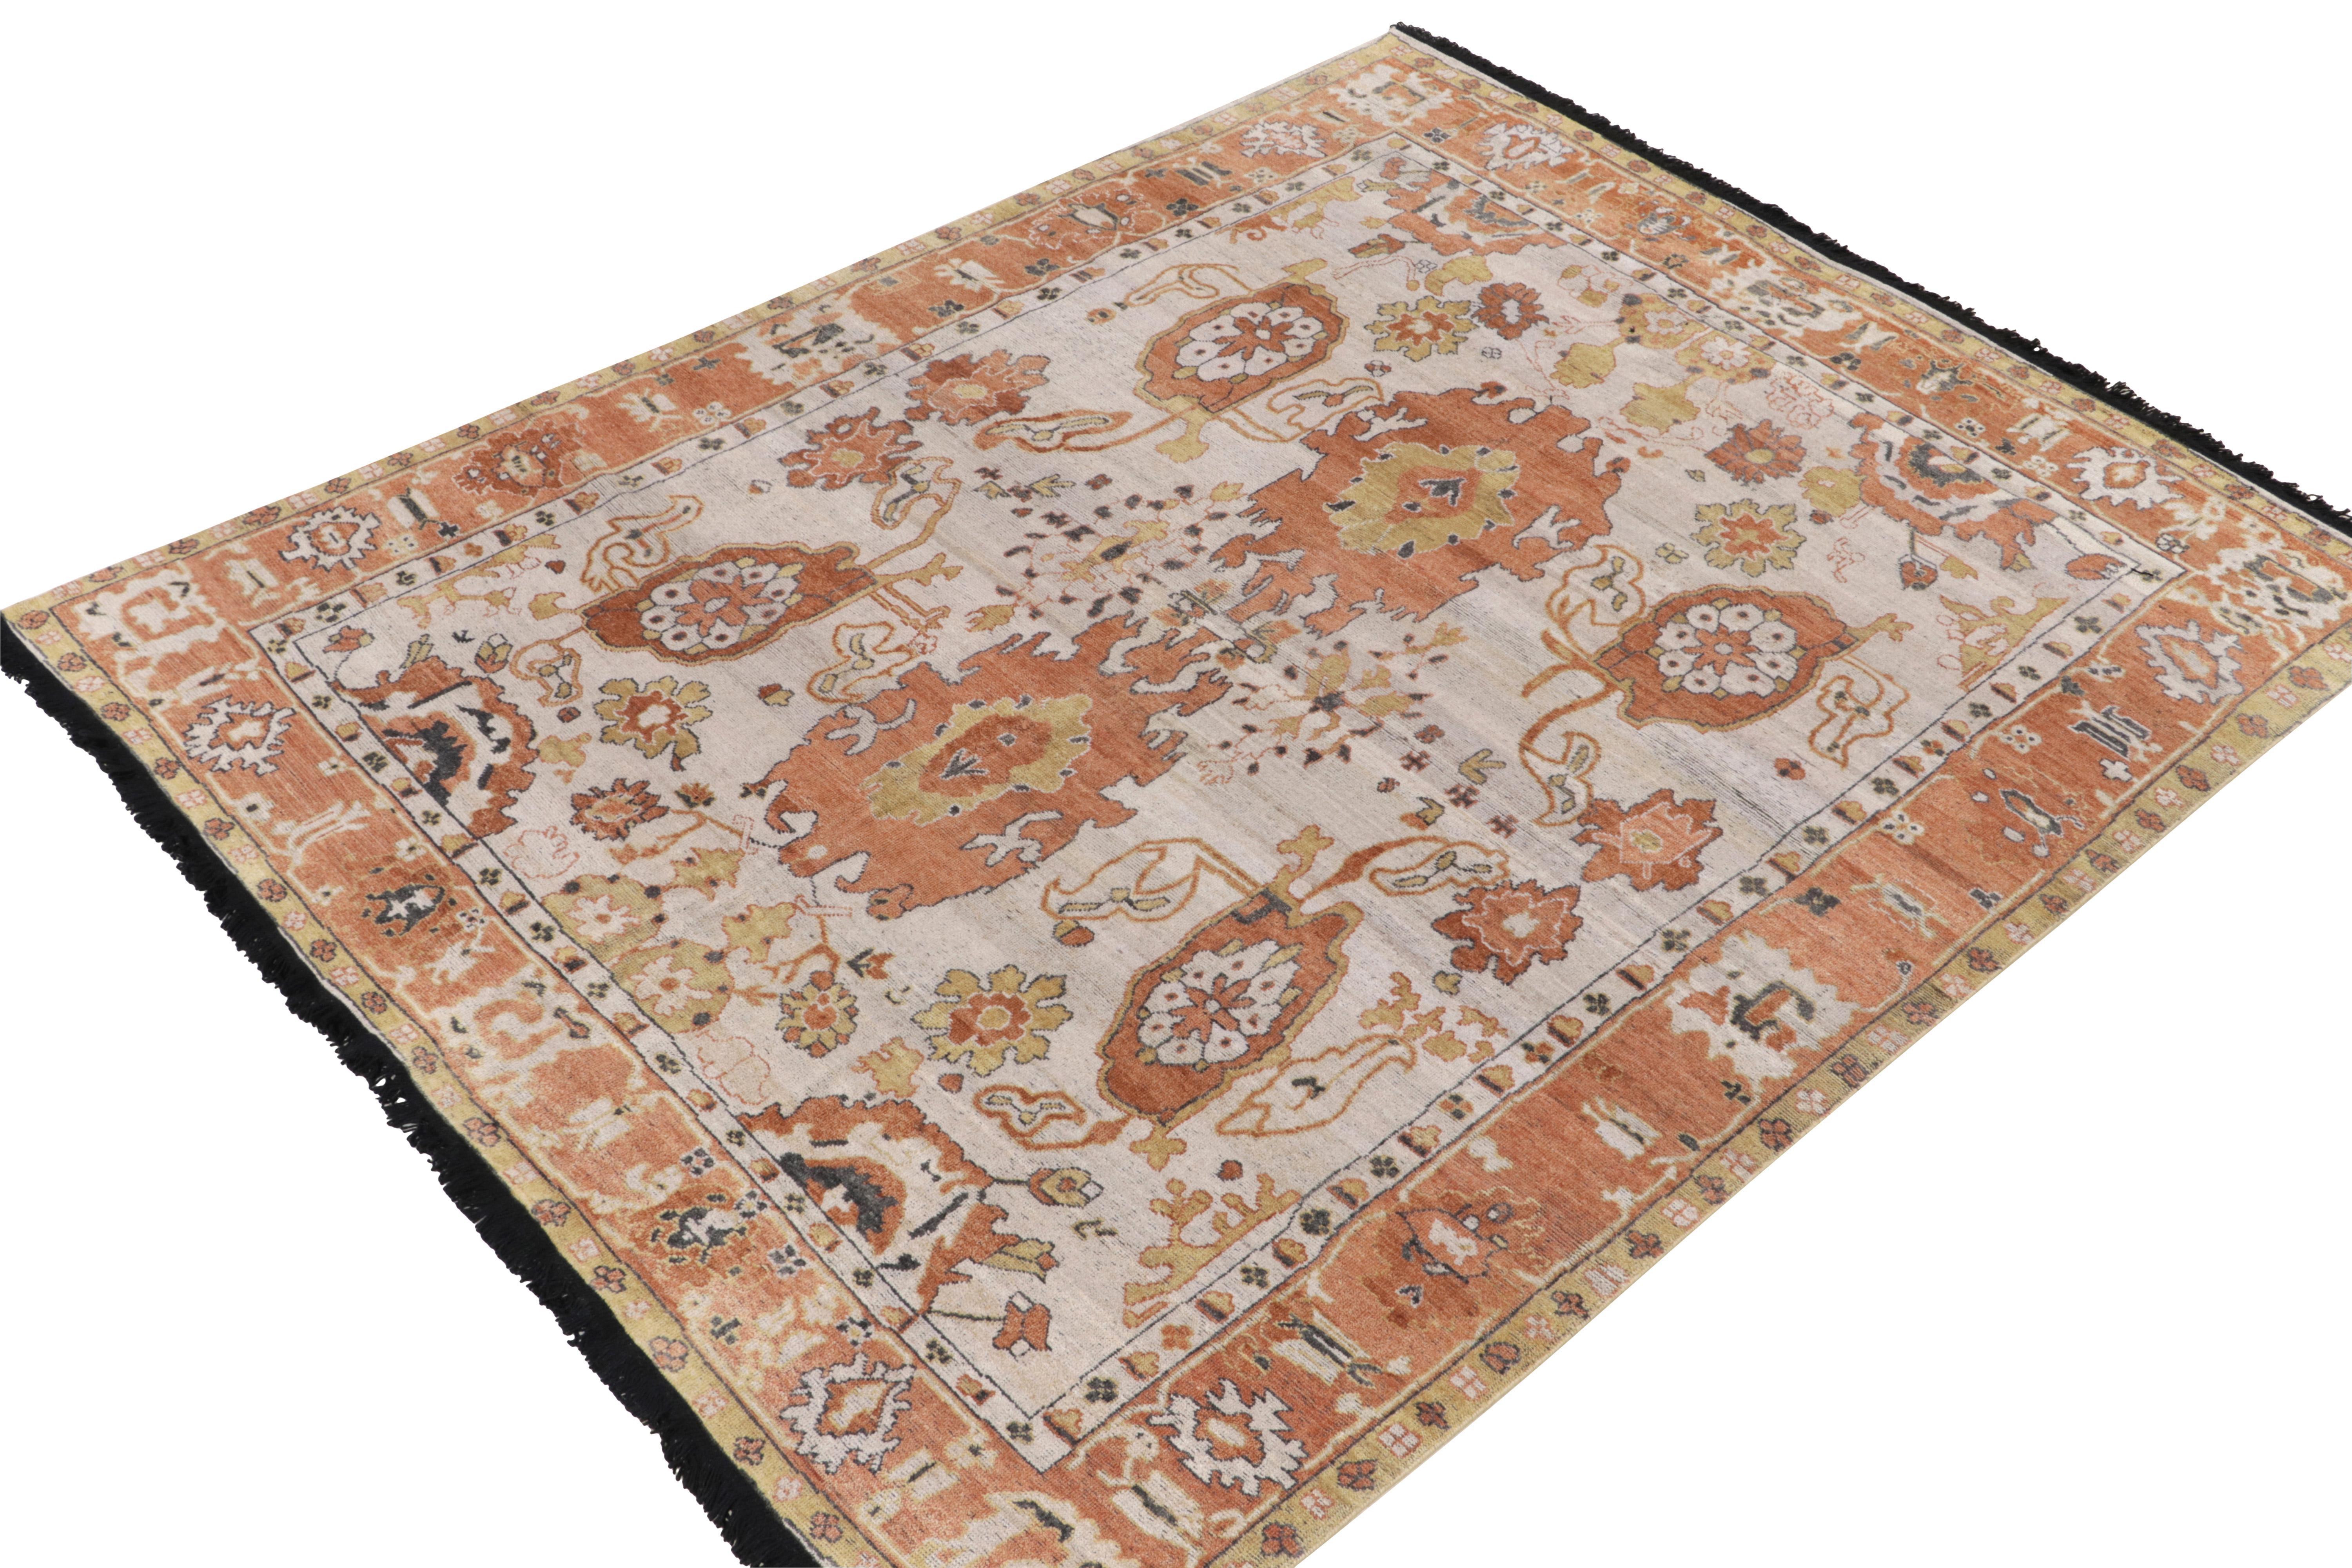 Noué à la main en laine, ce tapis 8x10 est une ode aux tapis classiques témoignant de l'union des esthétiques tribales et contemporaines. Il est issu de la Collectional de Rug & Kilim. Le tapis s'inspire des motifs des tapis anciens Oushak du début